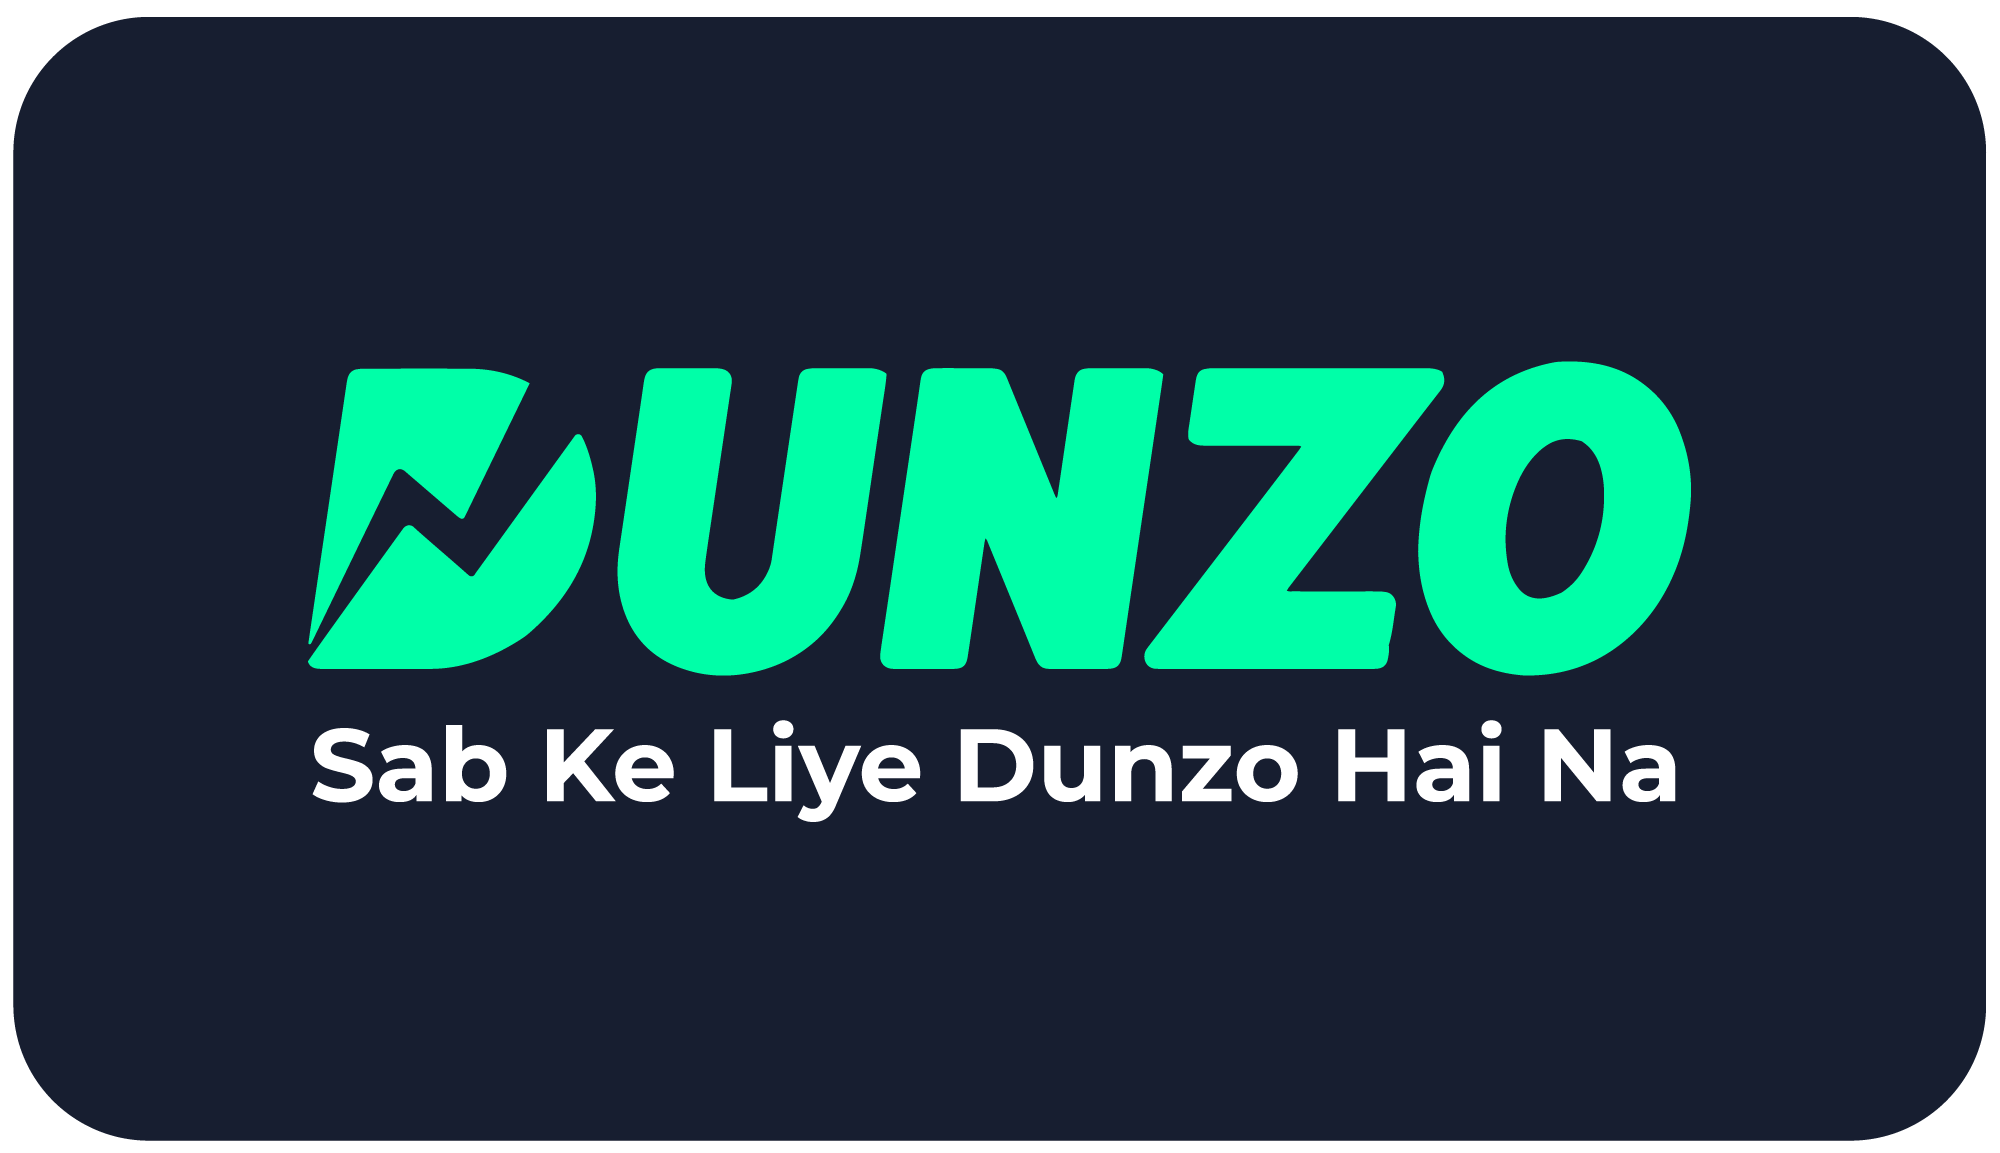 dunzo